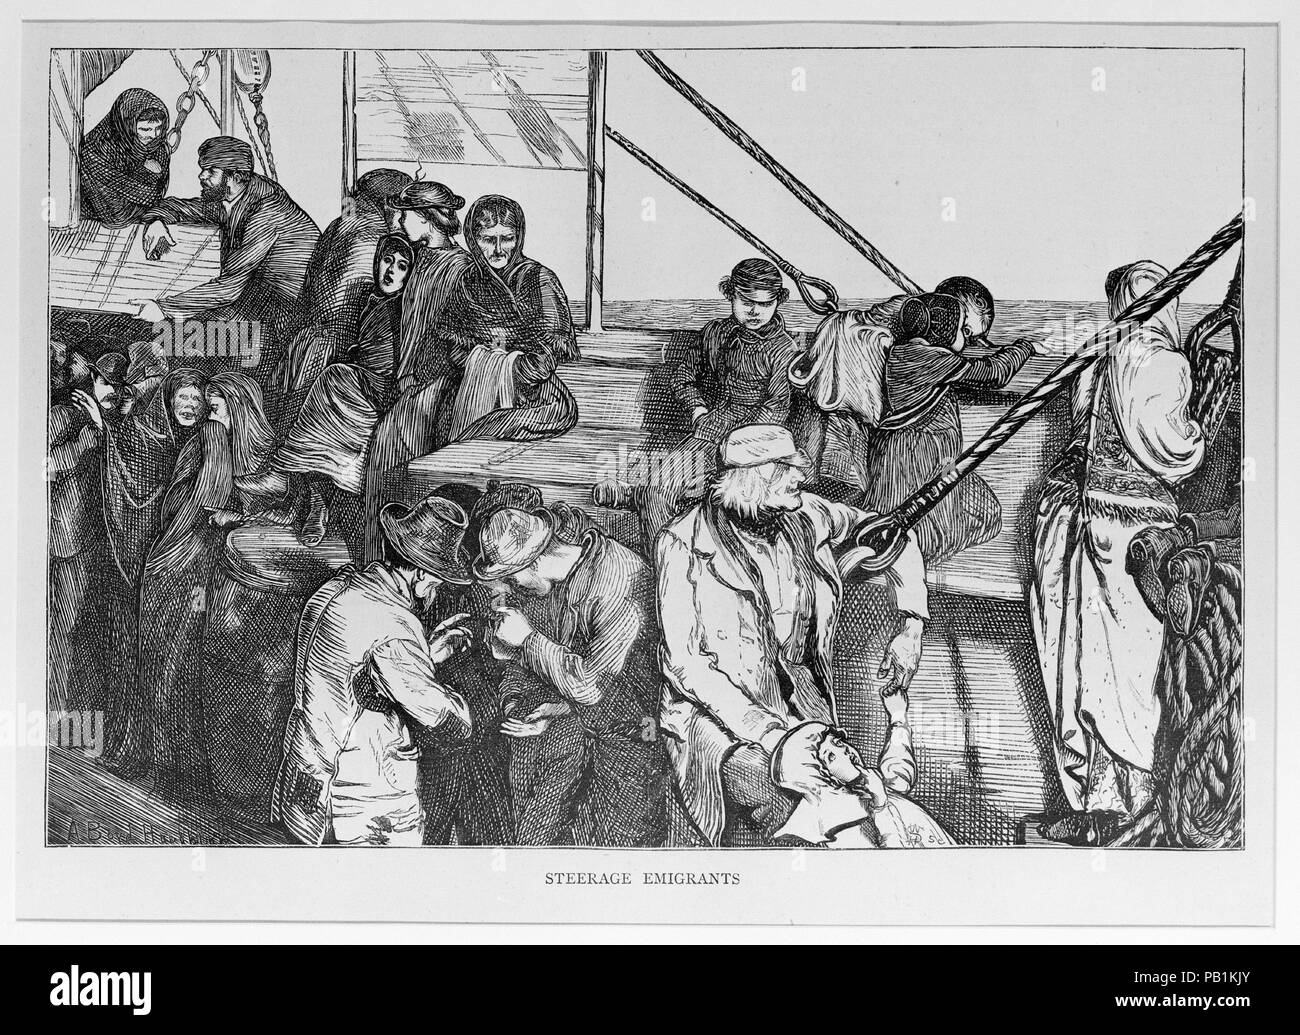 Der teerage Emigranten (die Grafik). Artist: Arthur Boyd Houghton (Briten, Madras, Indien 1836-1875 London). Abmessungen: Bild: 5 7/8 x 8 7/8 in. (15 x 22,5 cm) Blatt: 8 1/16 x 11 1/4 in. (20,5 x 28,6 cm). Datum: März 19, 1870. Museum: Metropolitan Museum of Art, New York, USA. Stockfoto